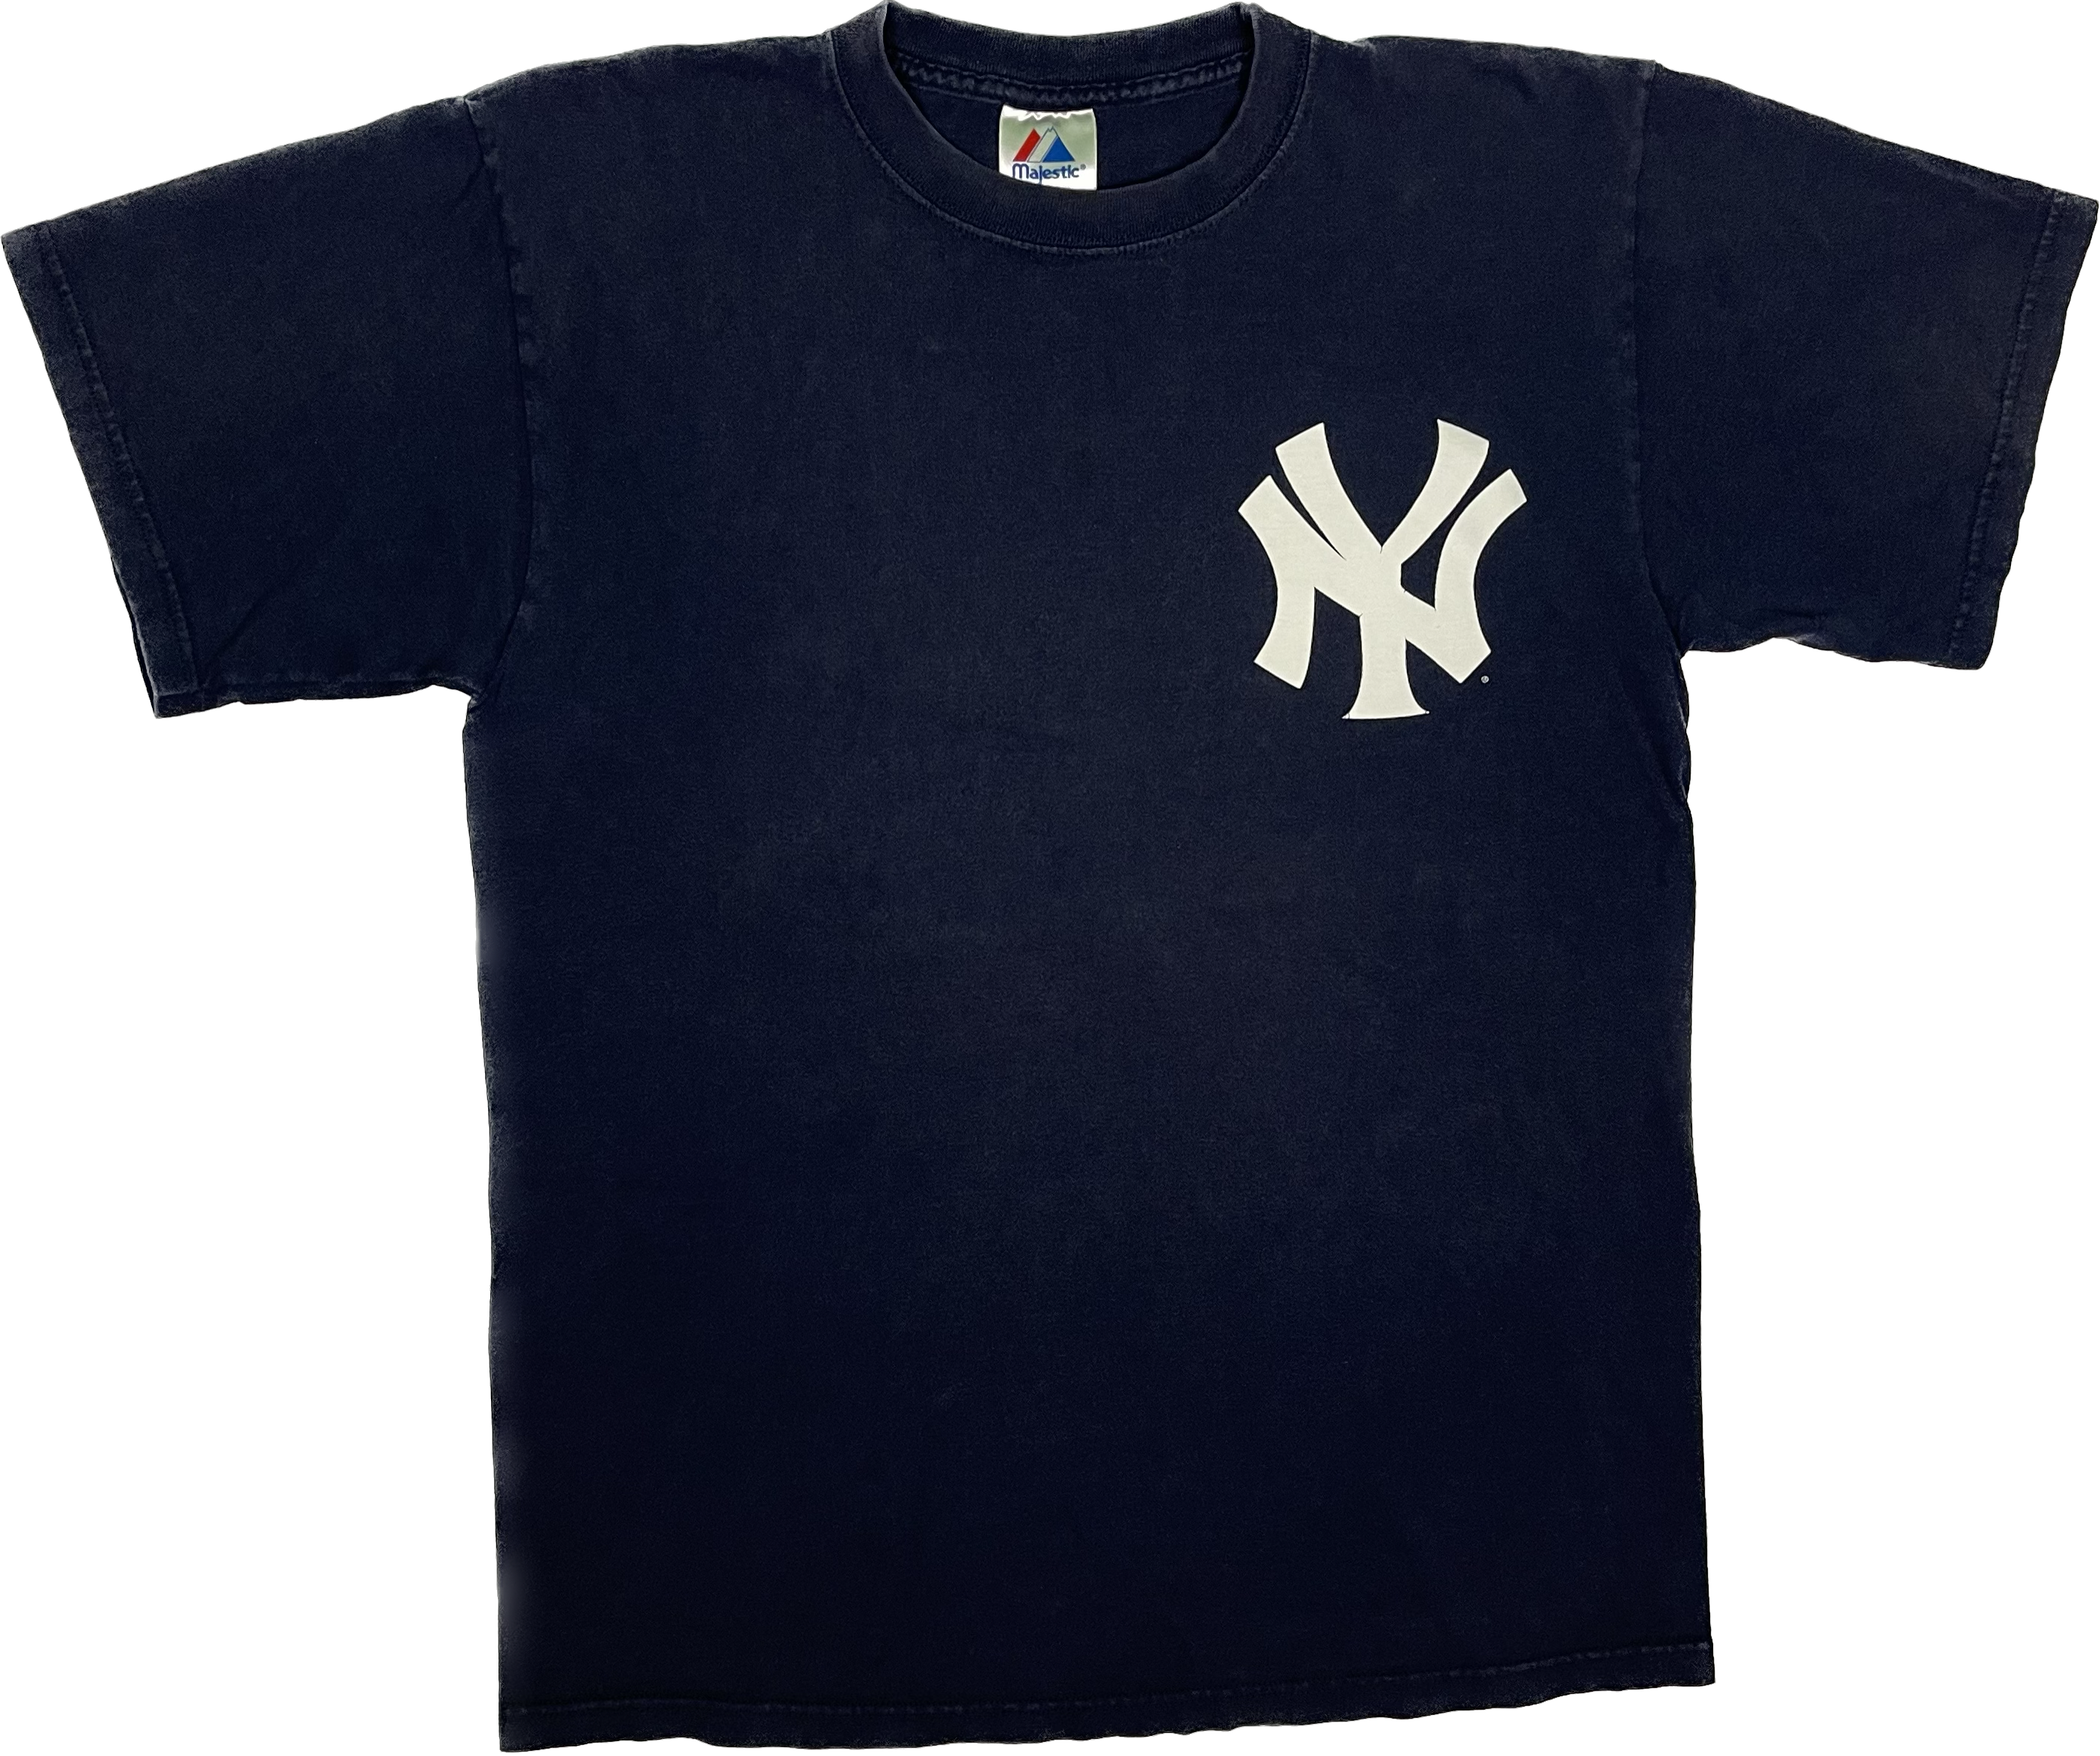 2009 NY Yankees World Champions Cartoon Character Mens L T-Shirt